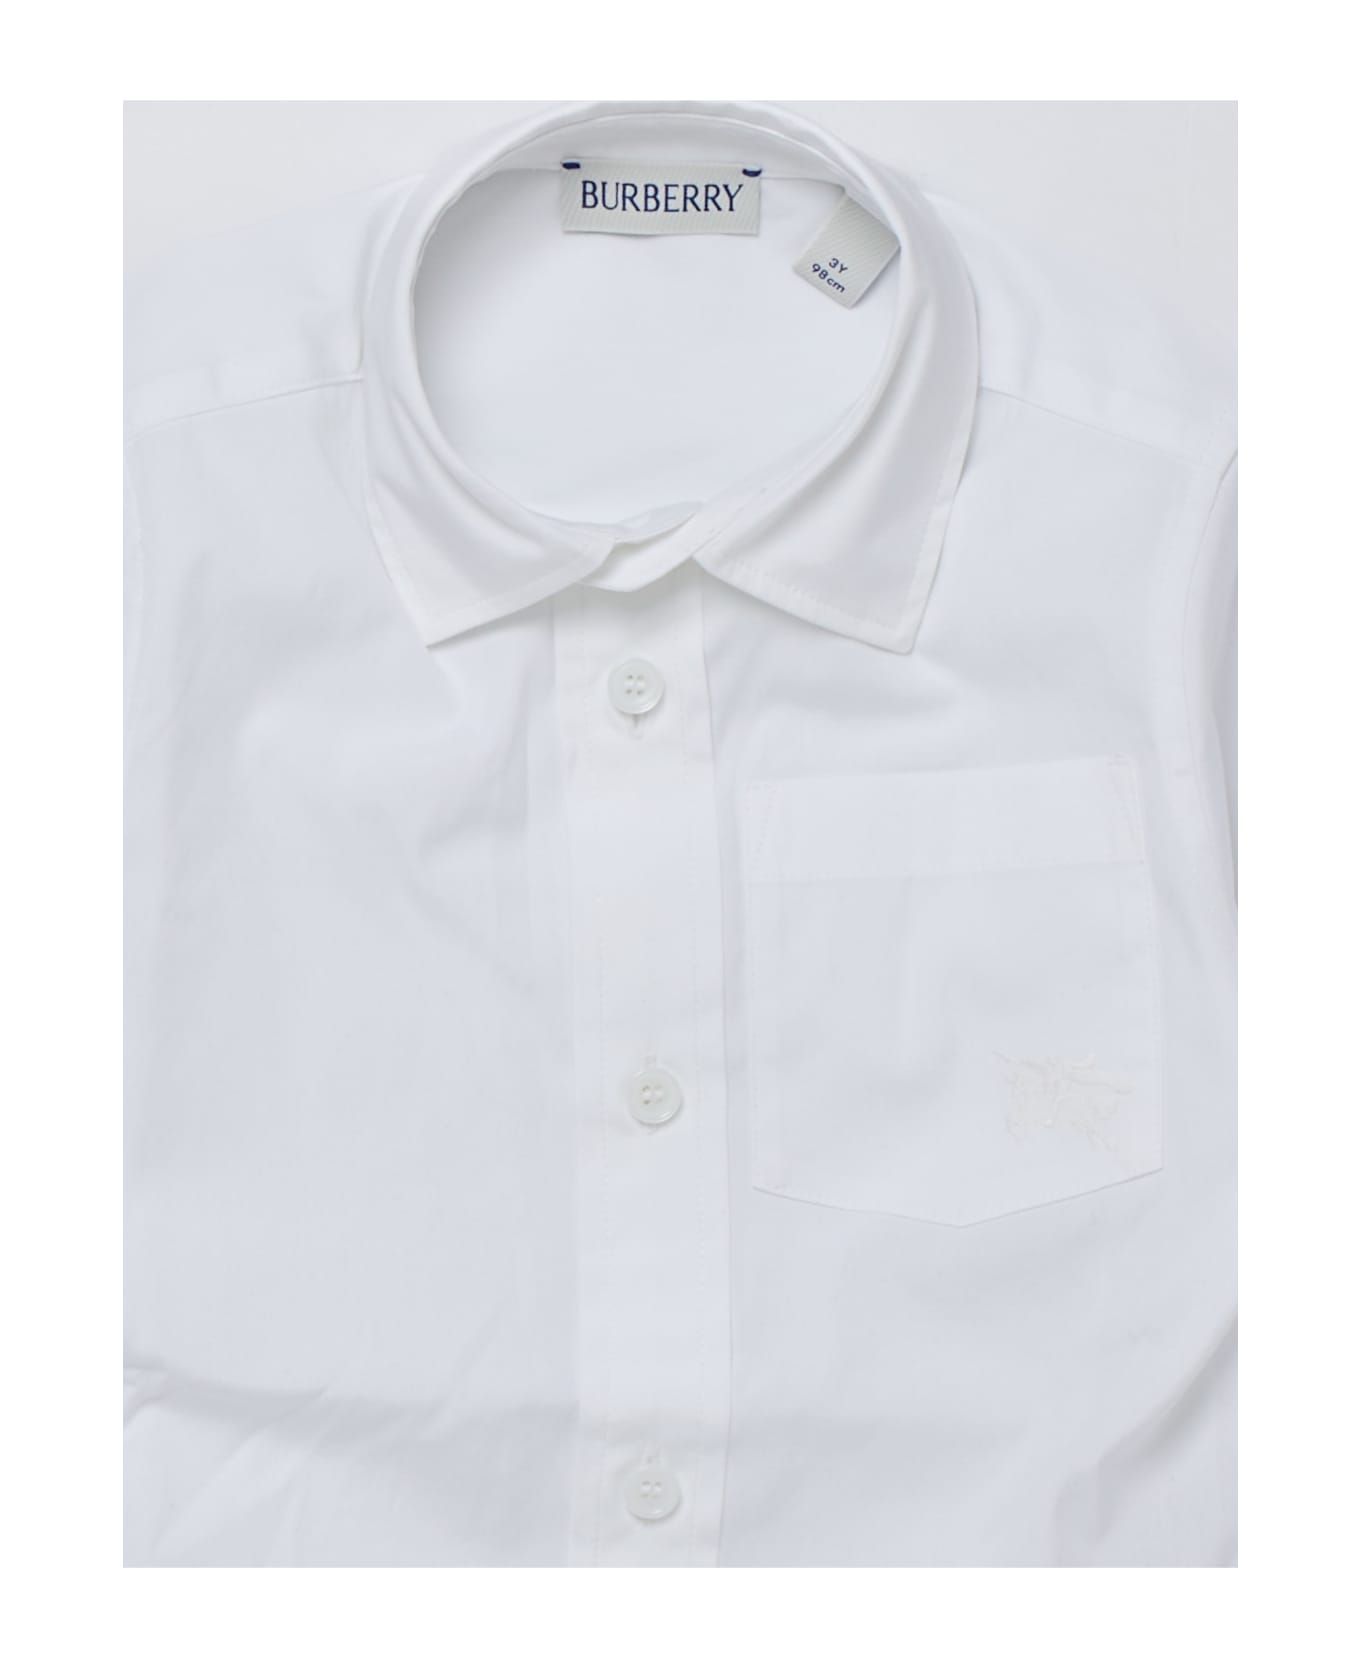 Burberry Owen Shirt Shirt - BIANCO